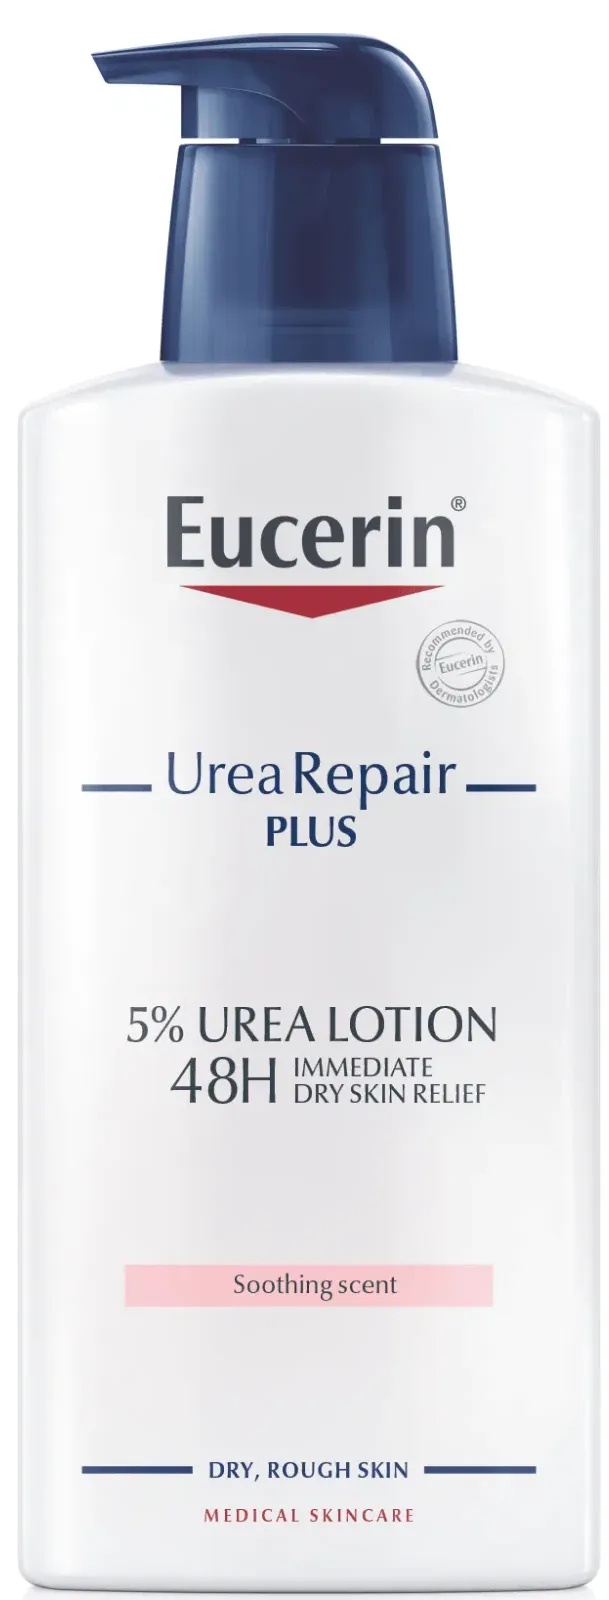 Eucerin Urea Repair Plus 5% Urea Lotion